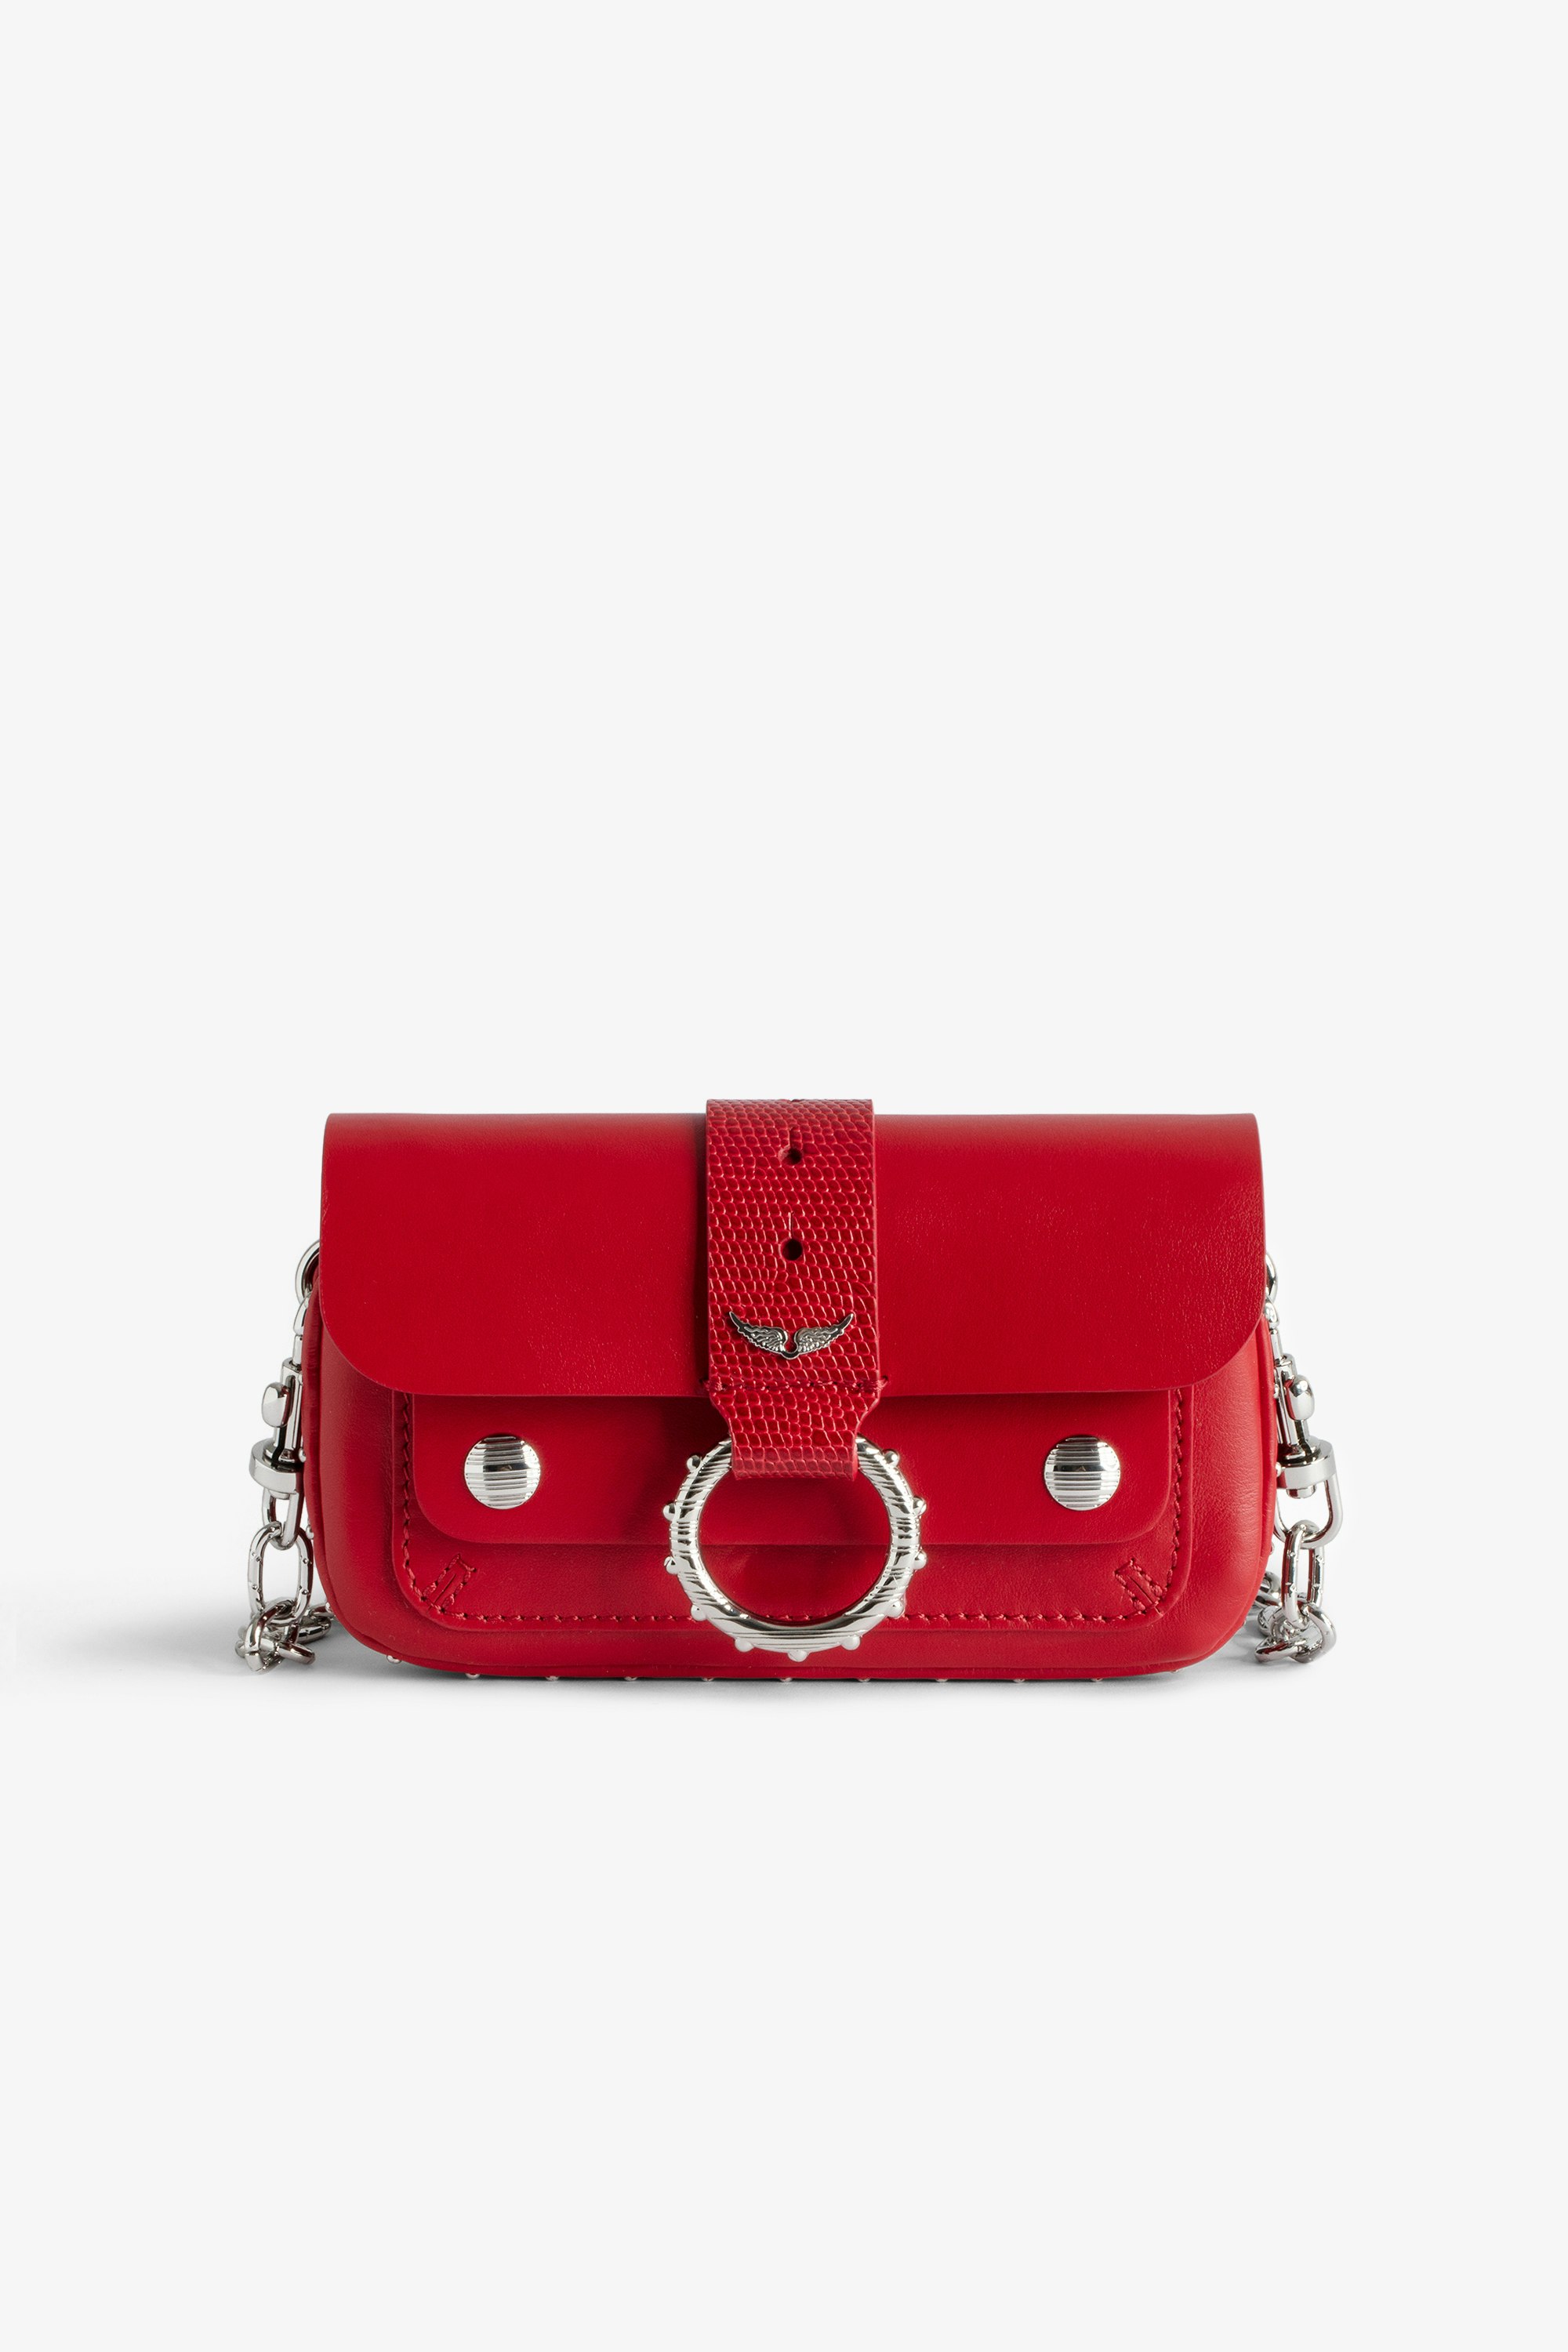 Borsa Kate Wallet Mini borsa in pelle liscia rossa con catena in metallo e passante in pelle goffrata effetto iguana da donna.